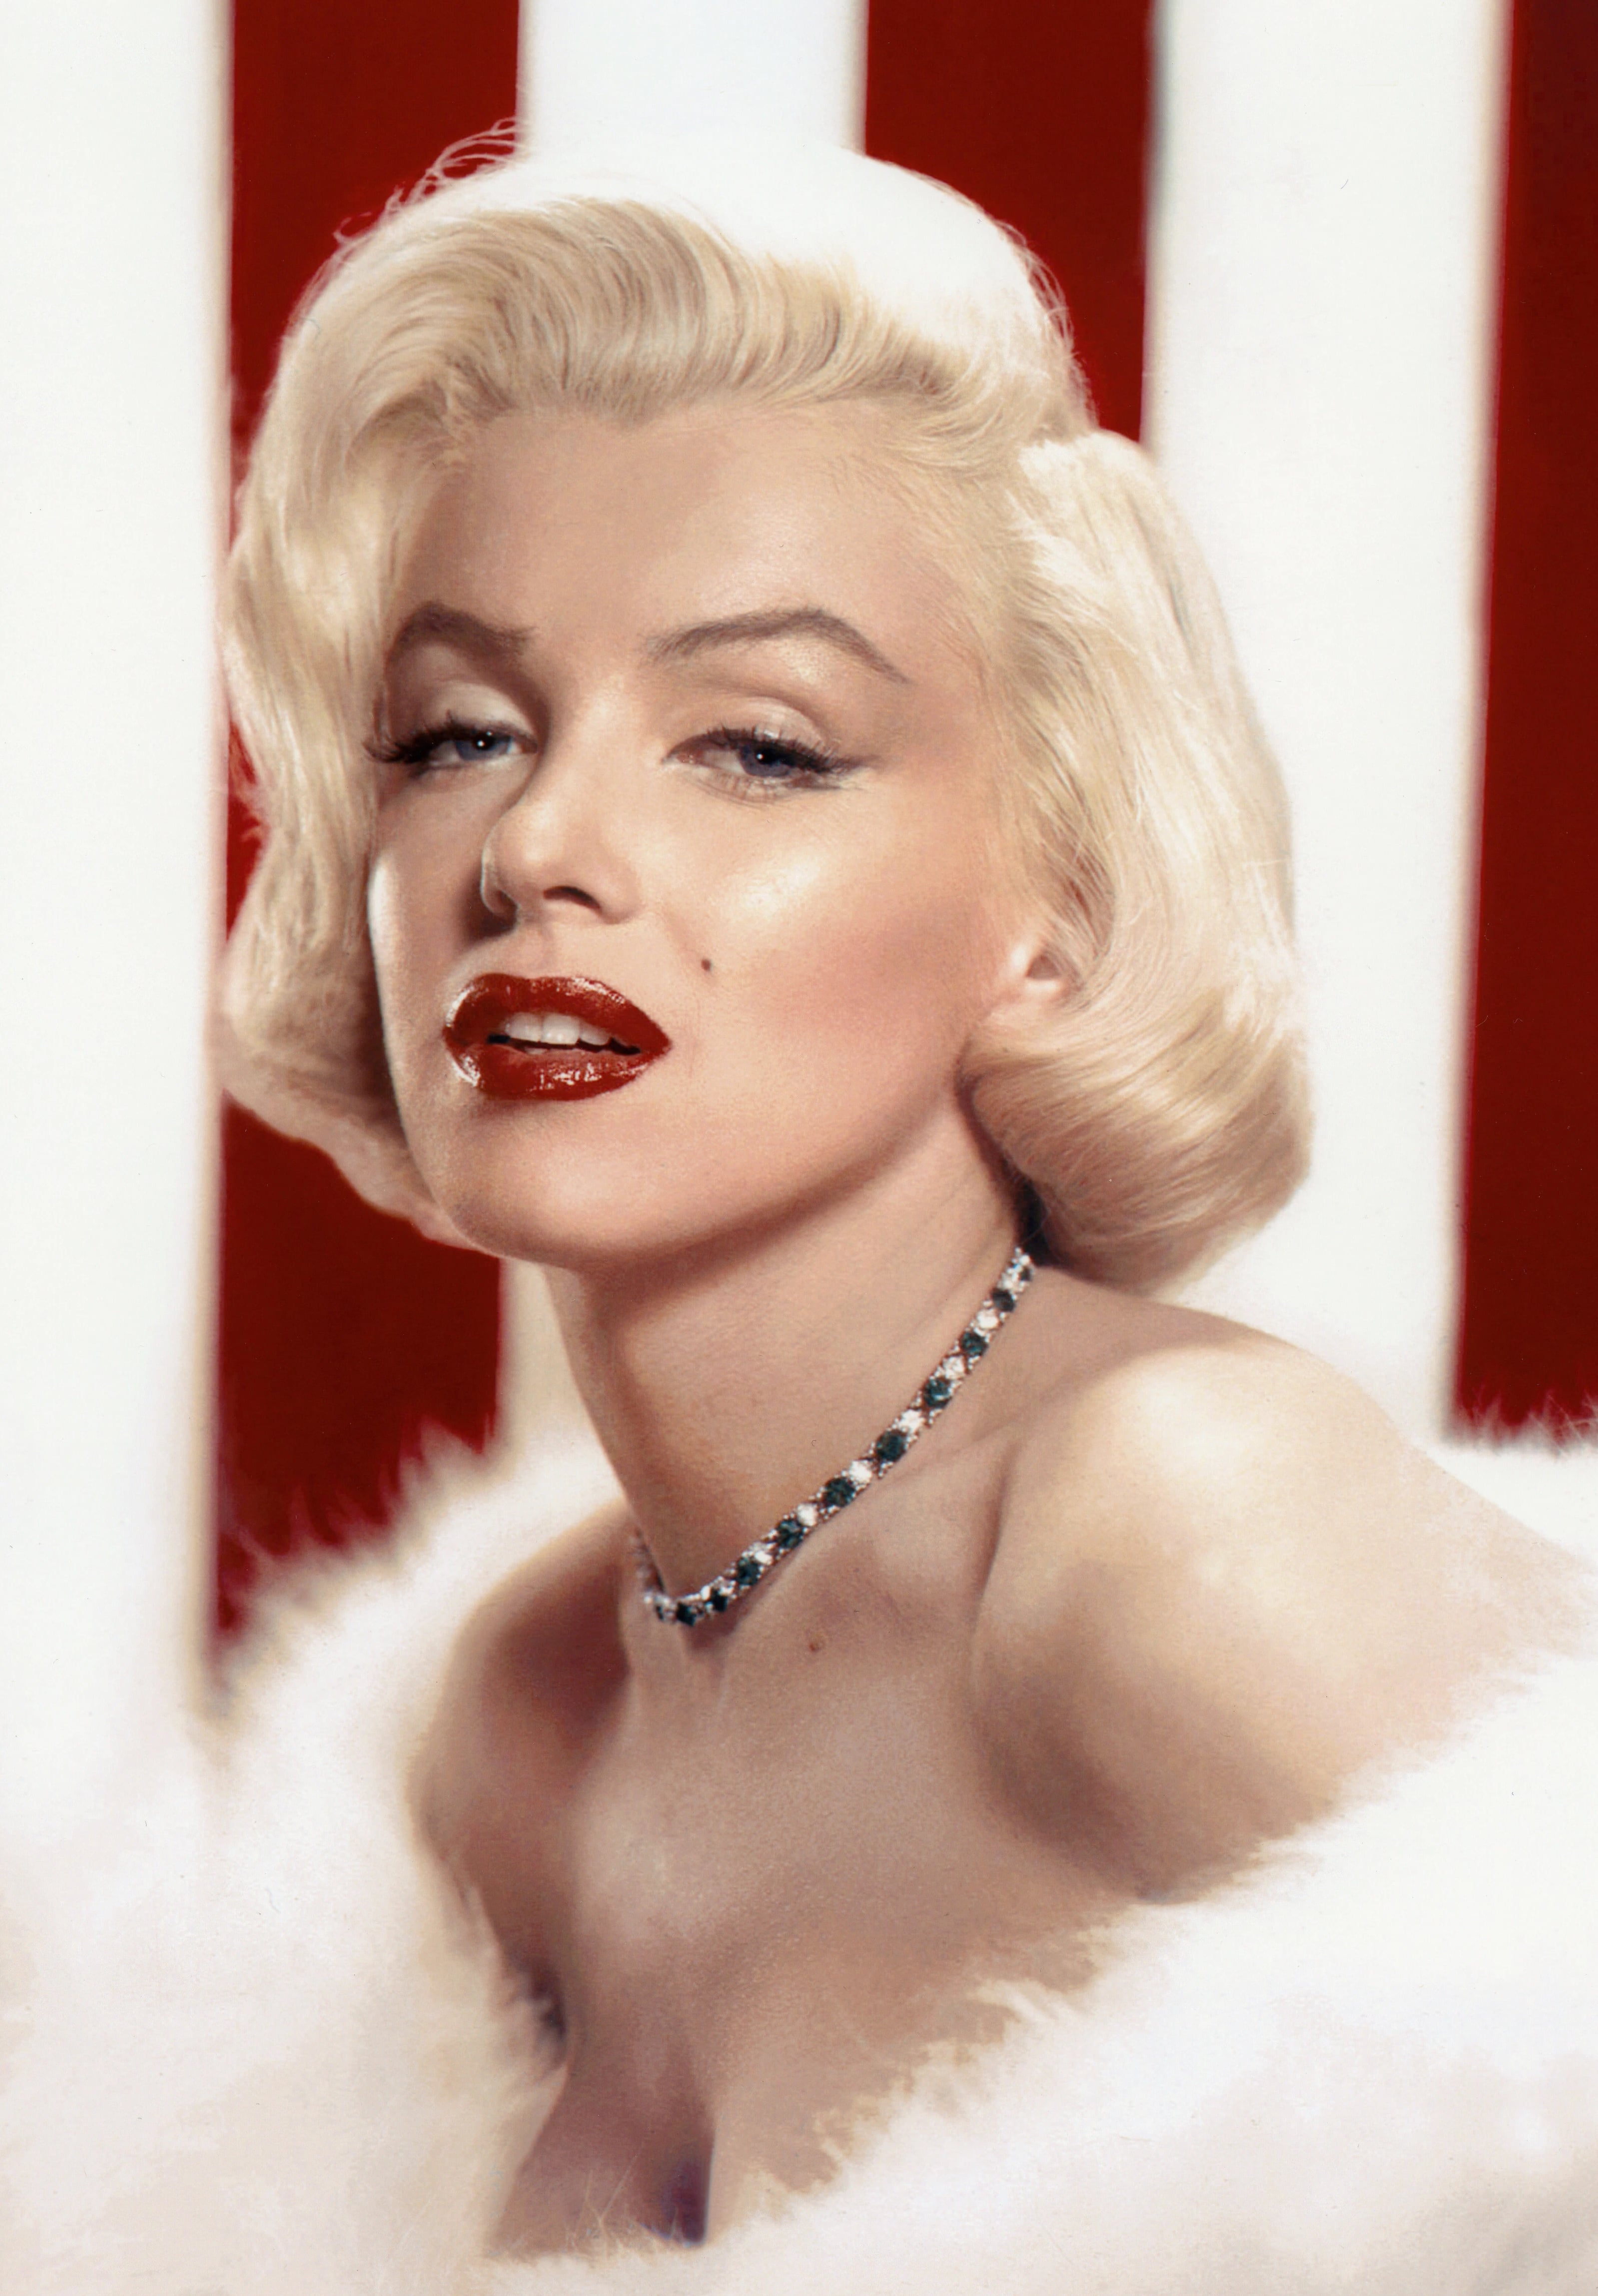 auteur Marilyn Monroe de la citation L'imperfection est la beauté, la folie est géniale et il vaut mieux être absolument ridicule que absolument ennuyeux.